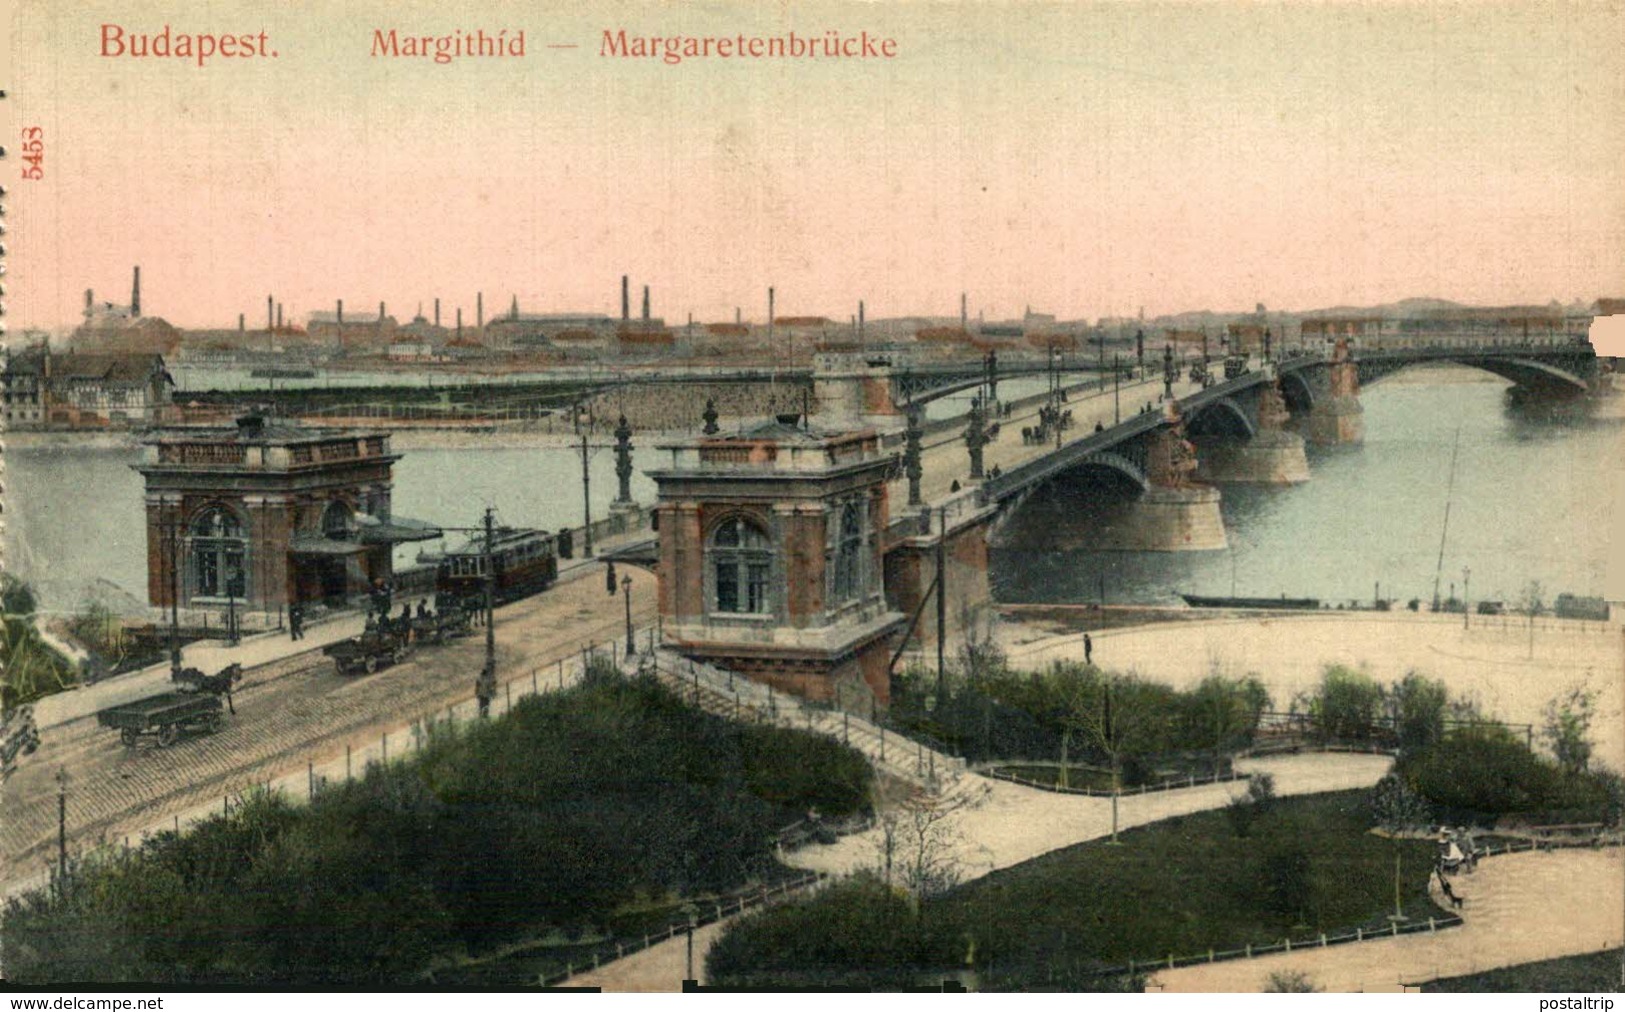 Budapest. Margithid. Hungria - Hungary